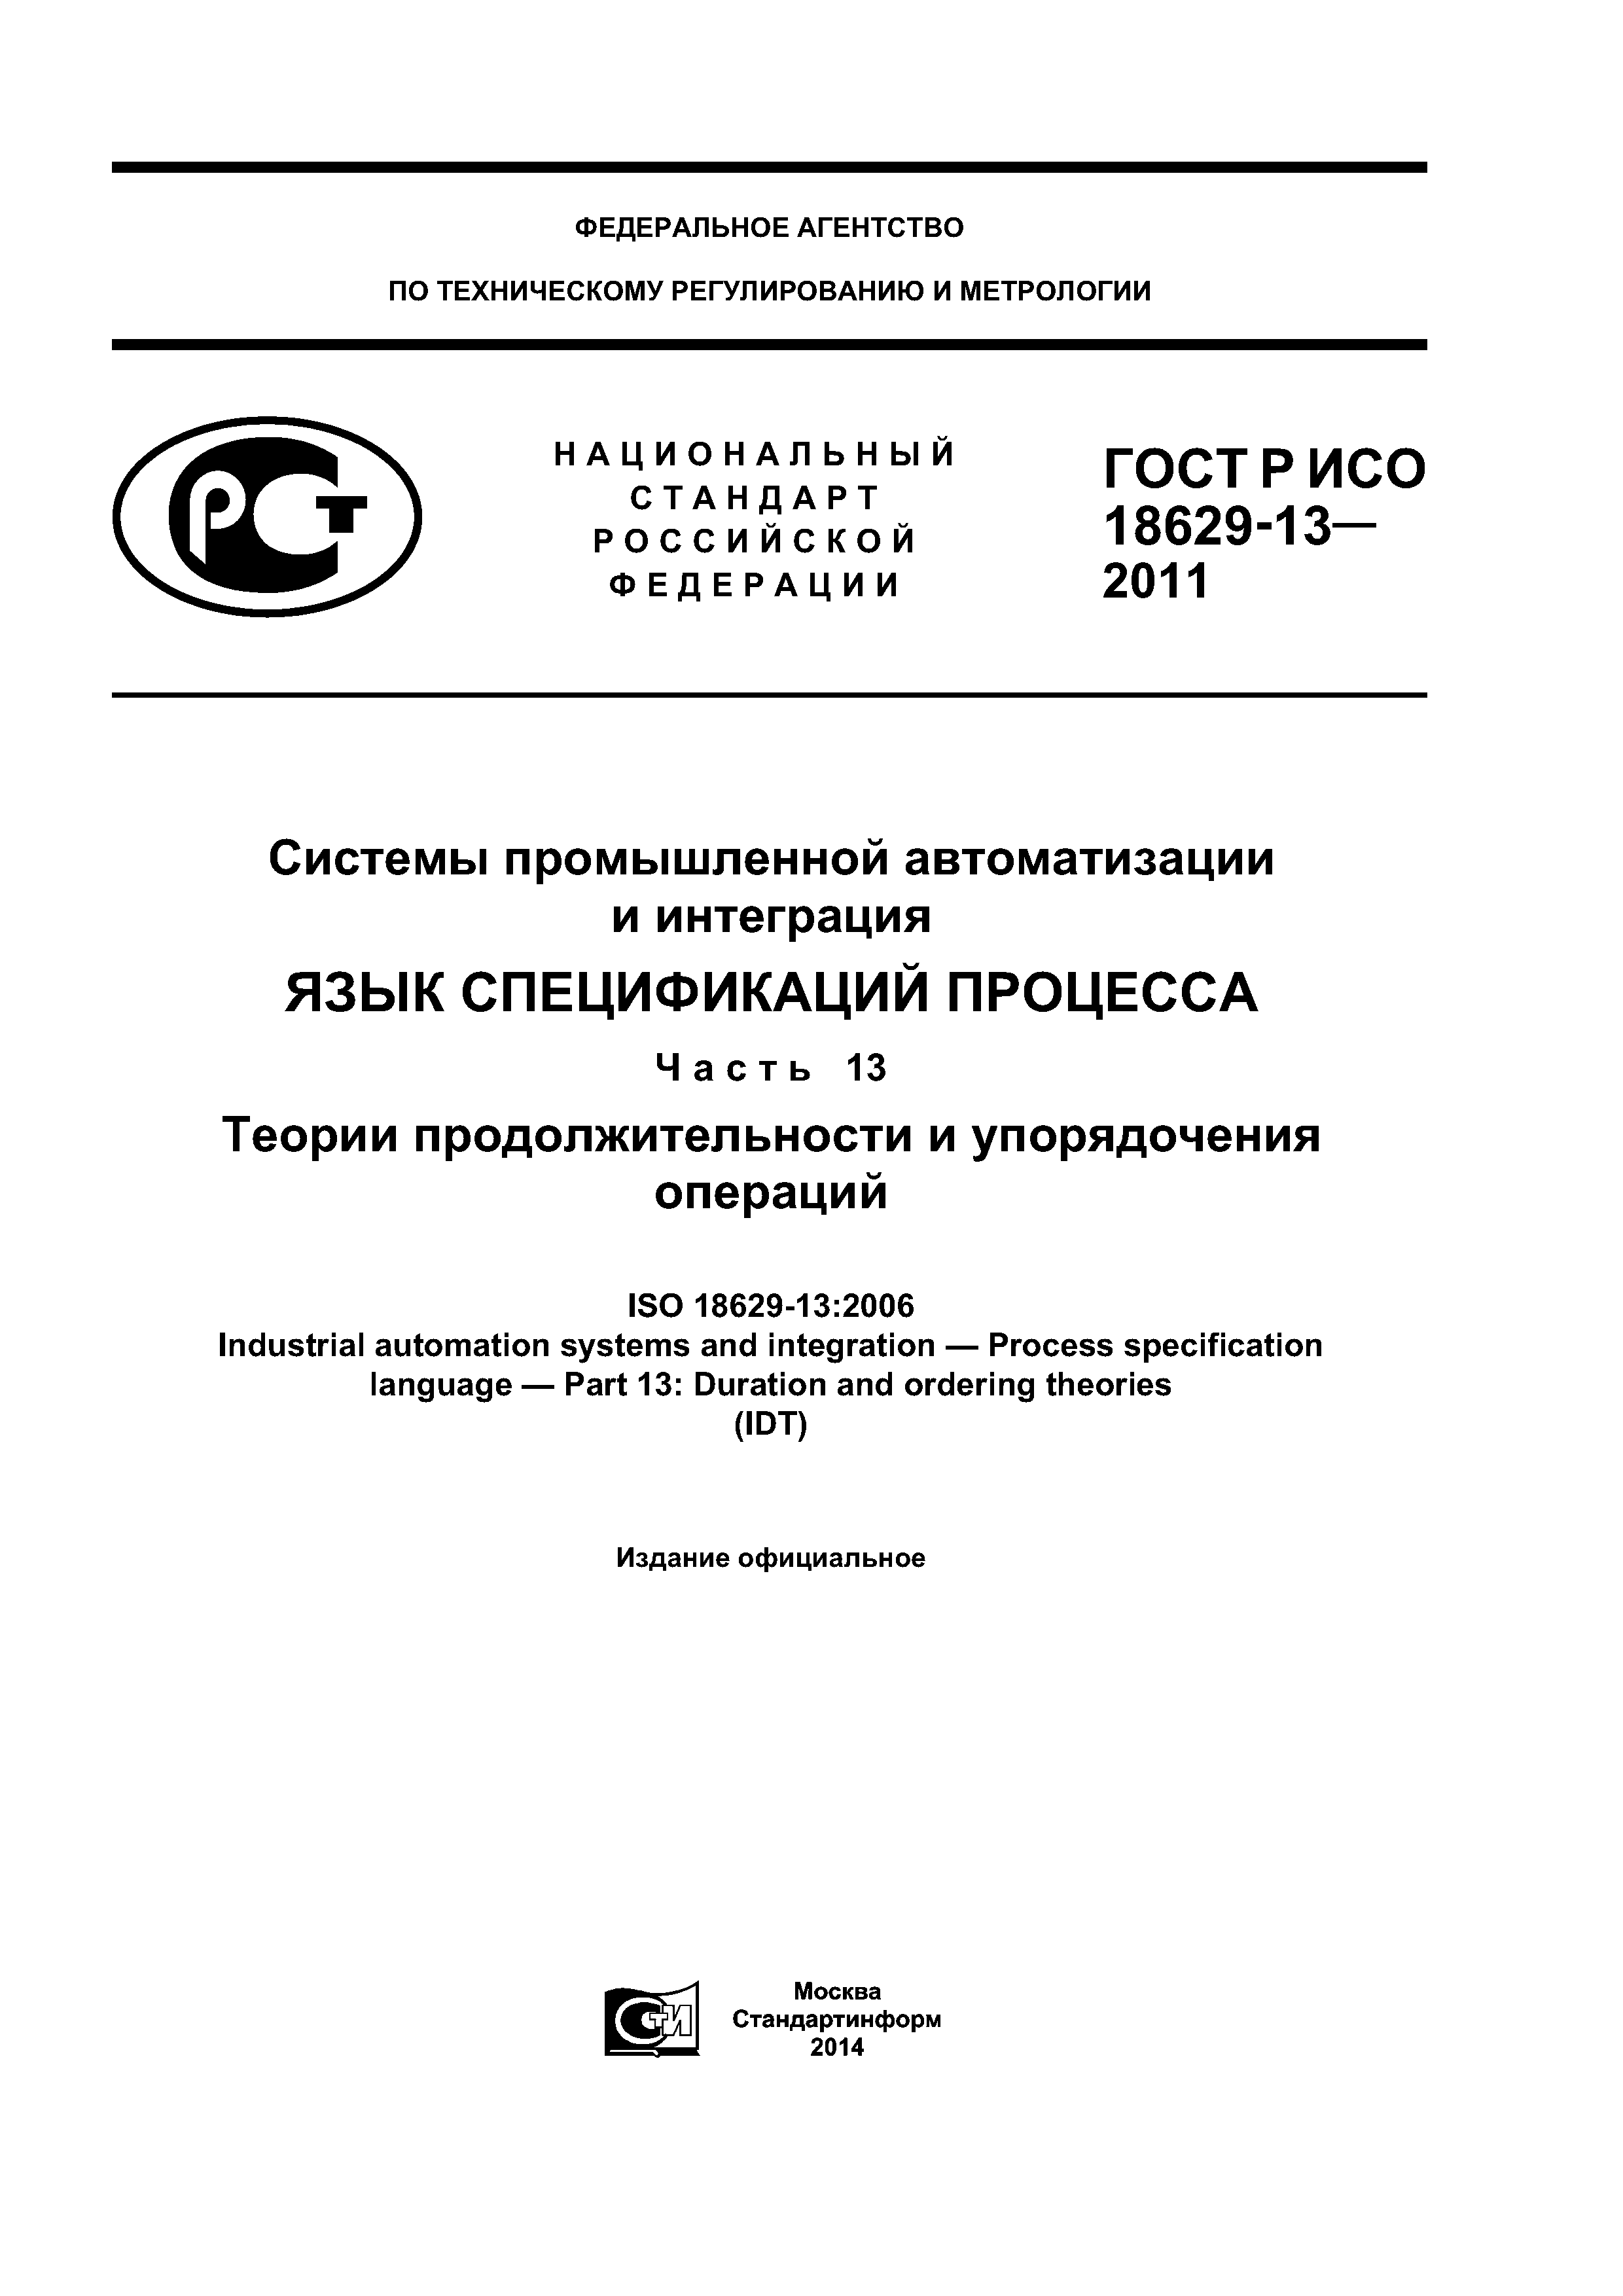 ГОСТ Р ИСО 18629-13-2011